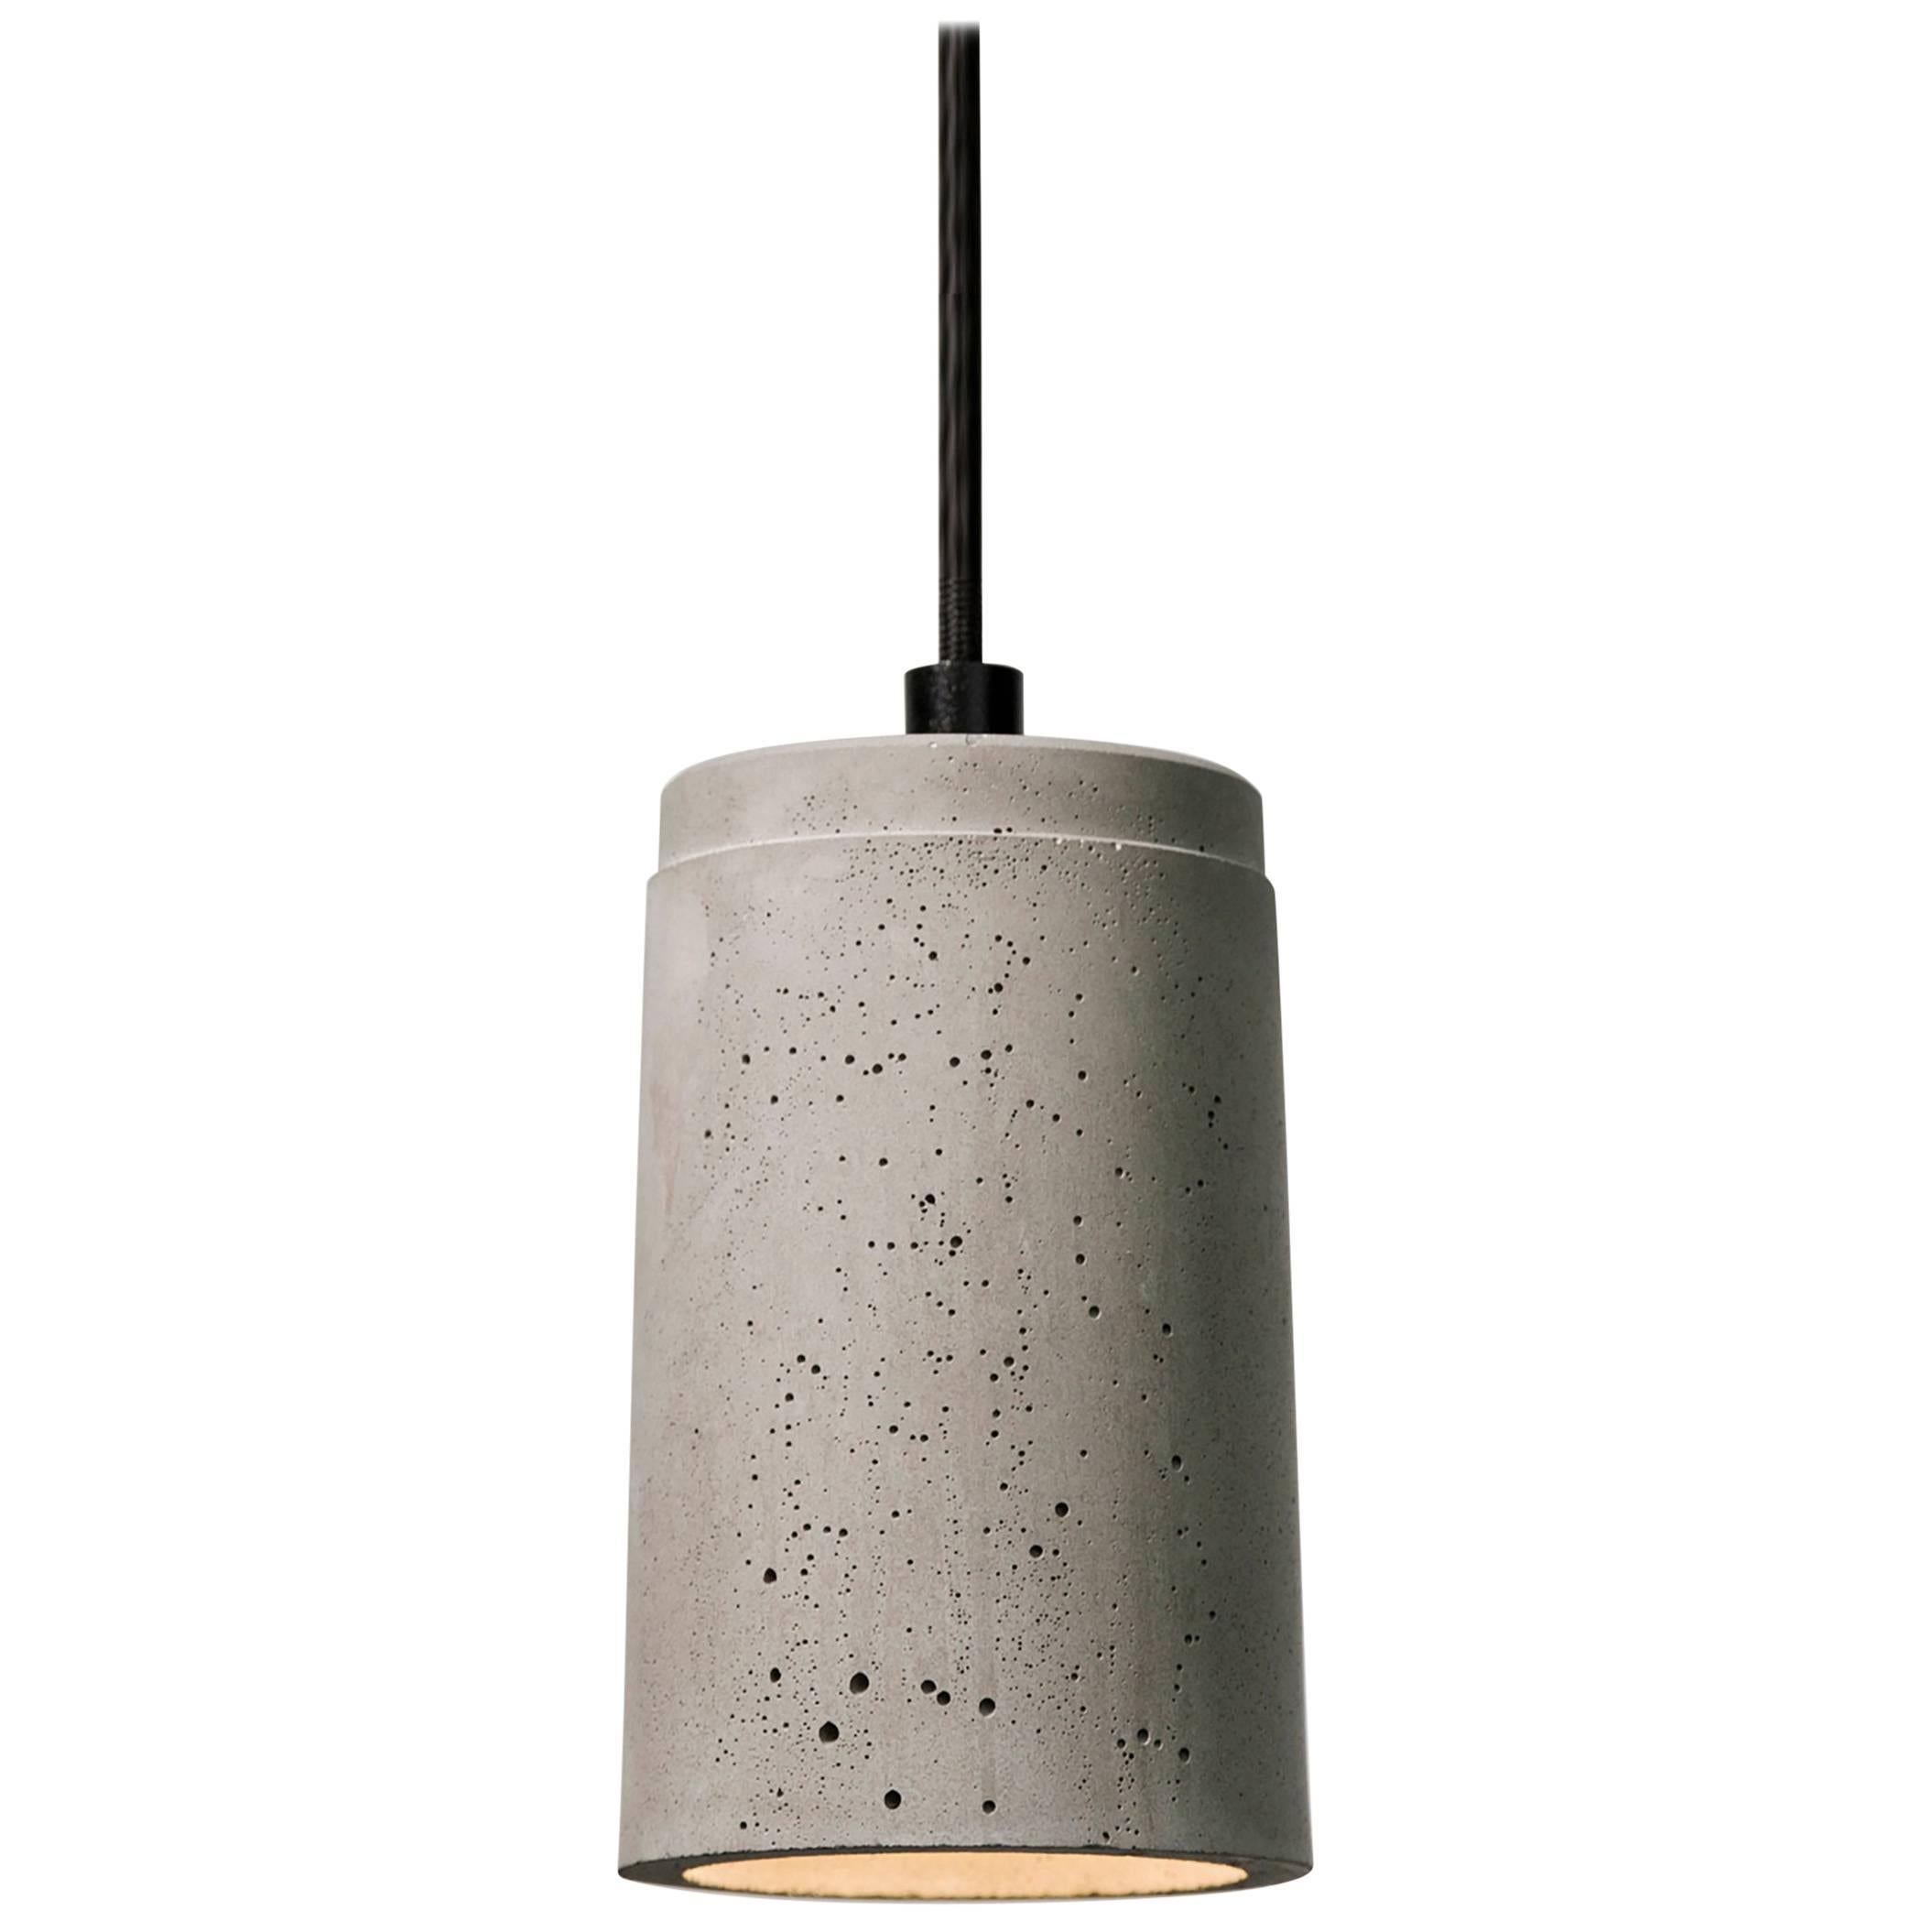 Zero, Concrete Ceiling Lamp by Bentu Design